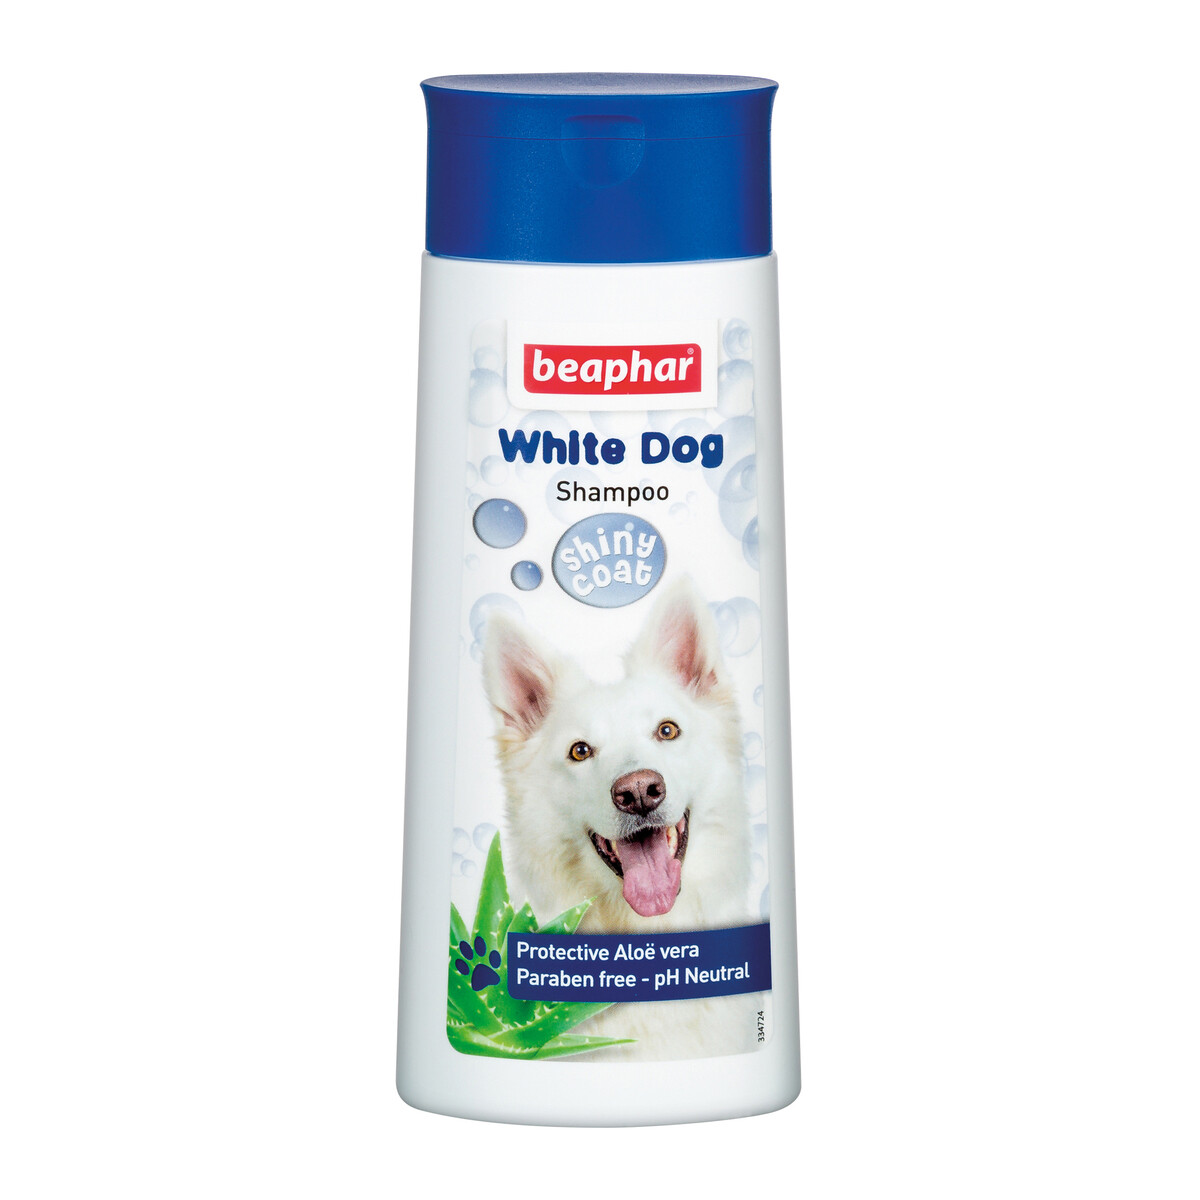 Beaphar - White Dog Shampoo- Shiny Coat